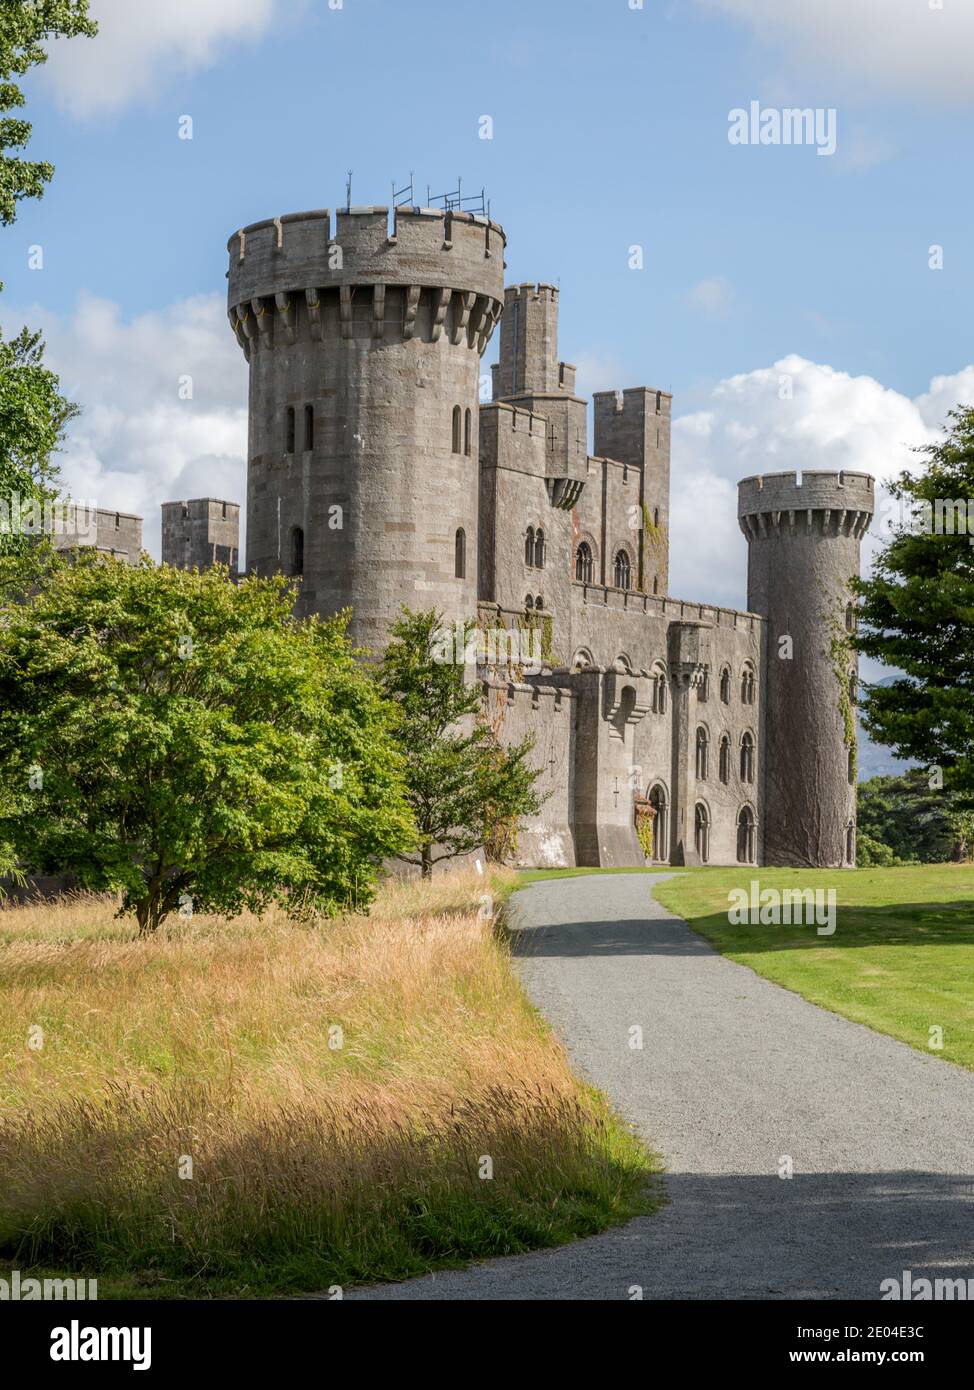 Penrhyn Castle im Norden von Wales ist ein Landhaus in Form einer normannischen Burg errichtet. Es wurde im 19. Jahrhundert zwischen 1822 und 1837 gebaut. Stockfoto